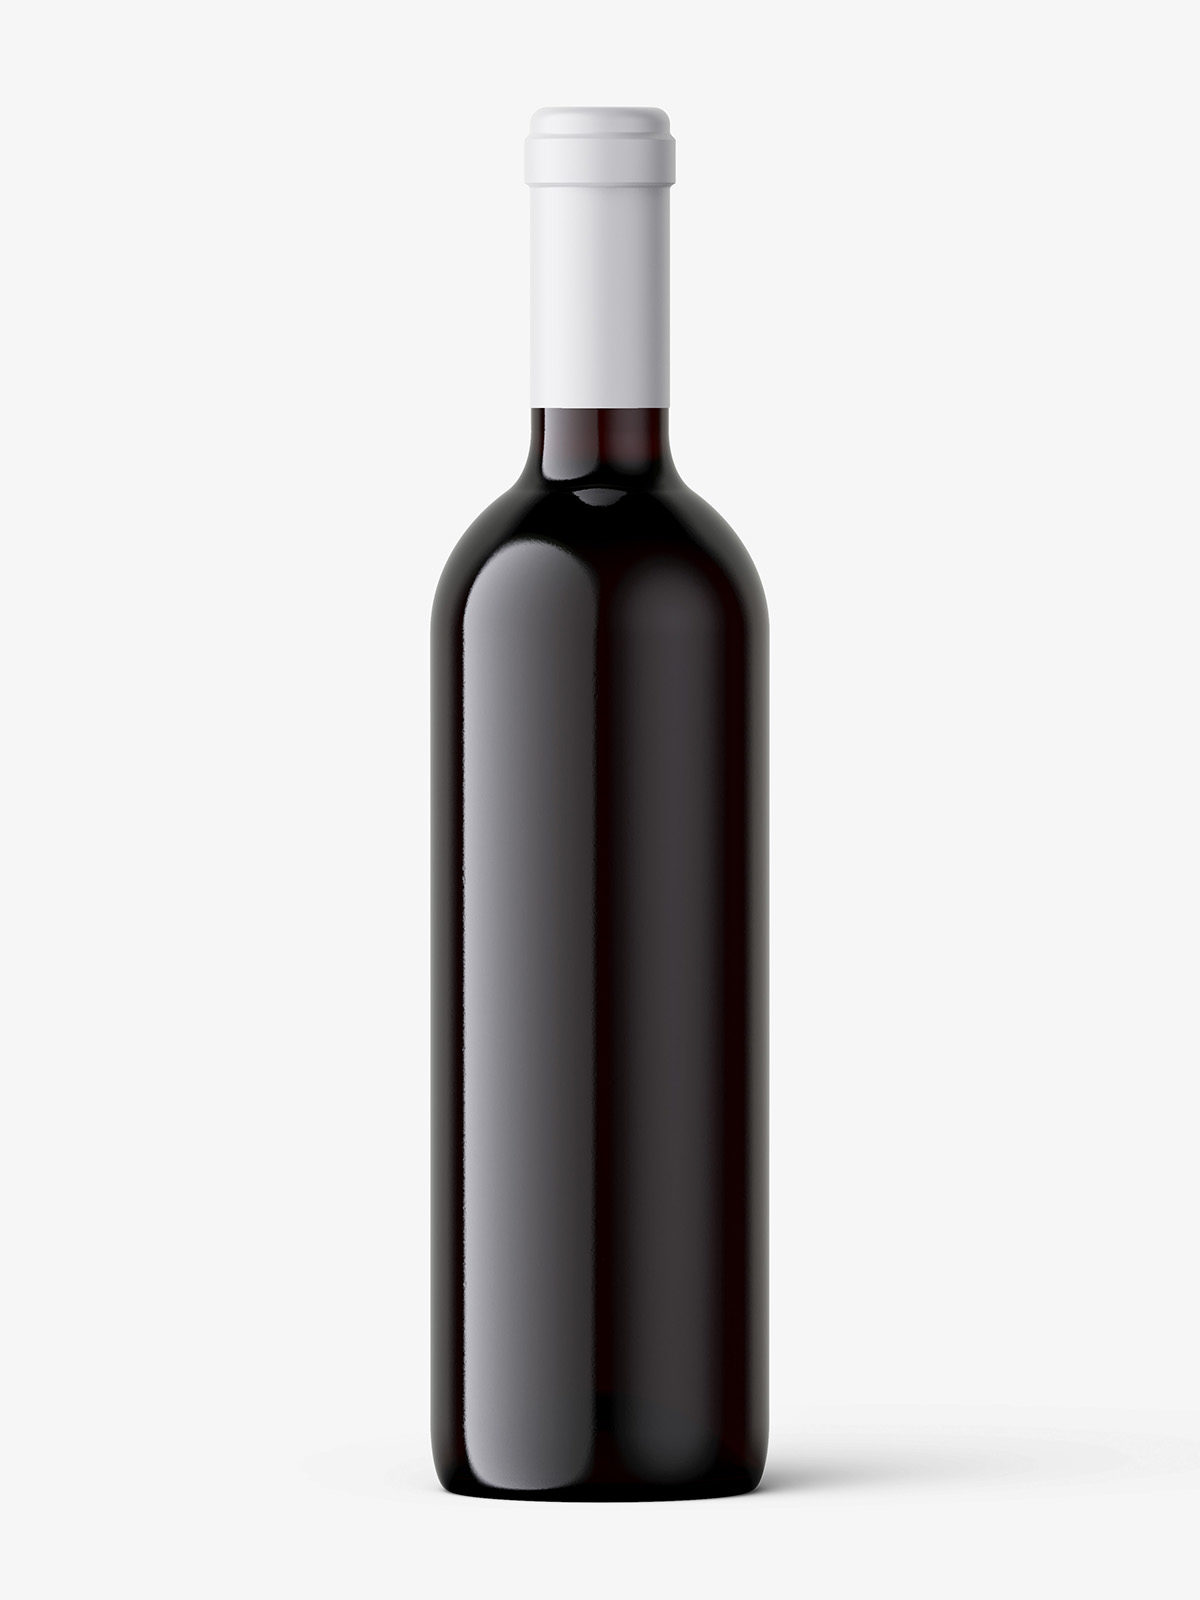 Download Wine bottle mockup - Smarty Mockups